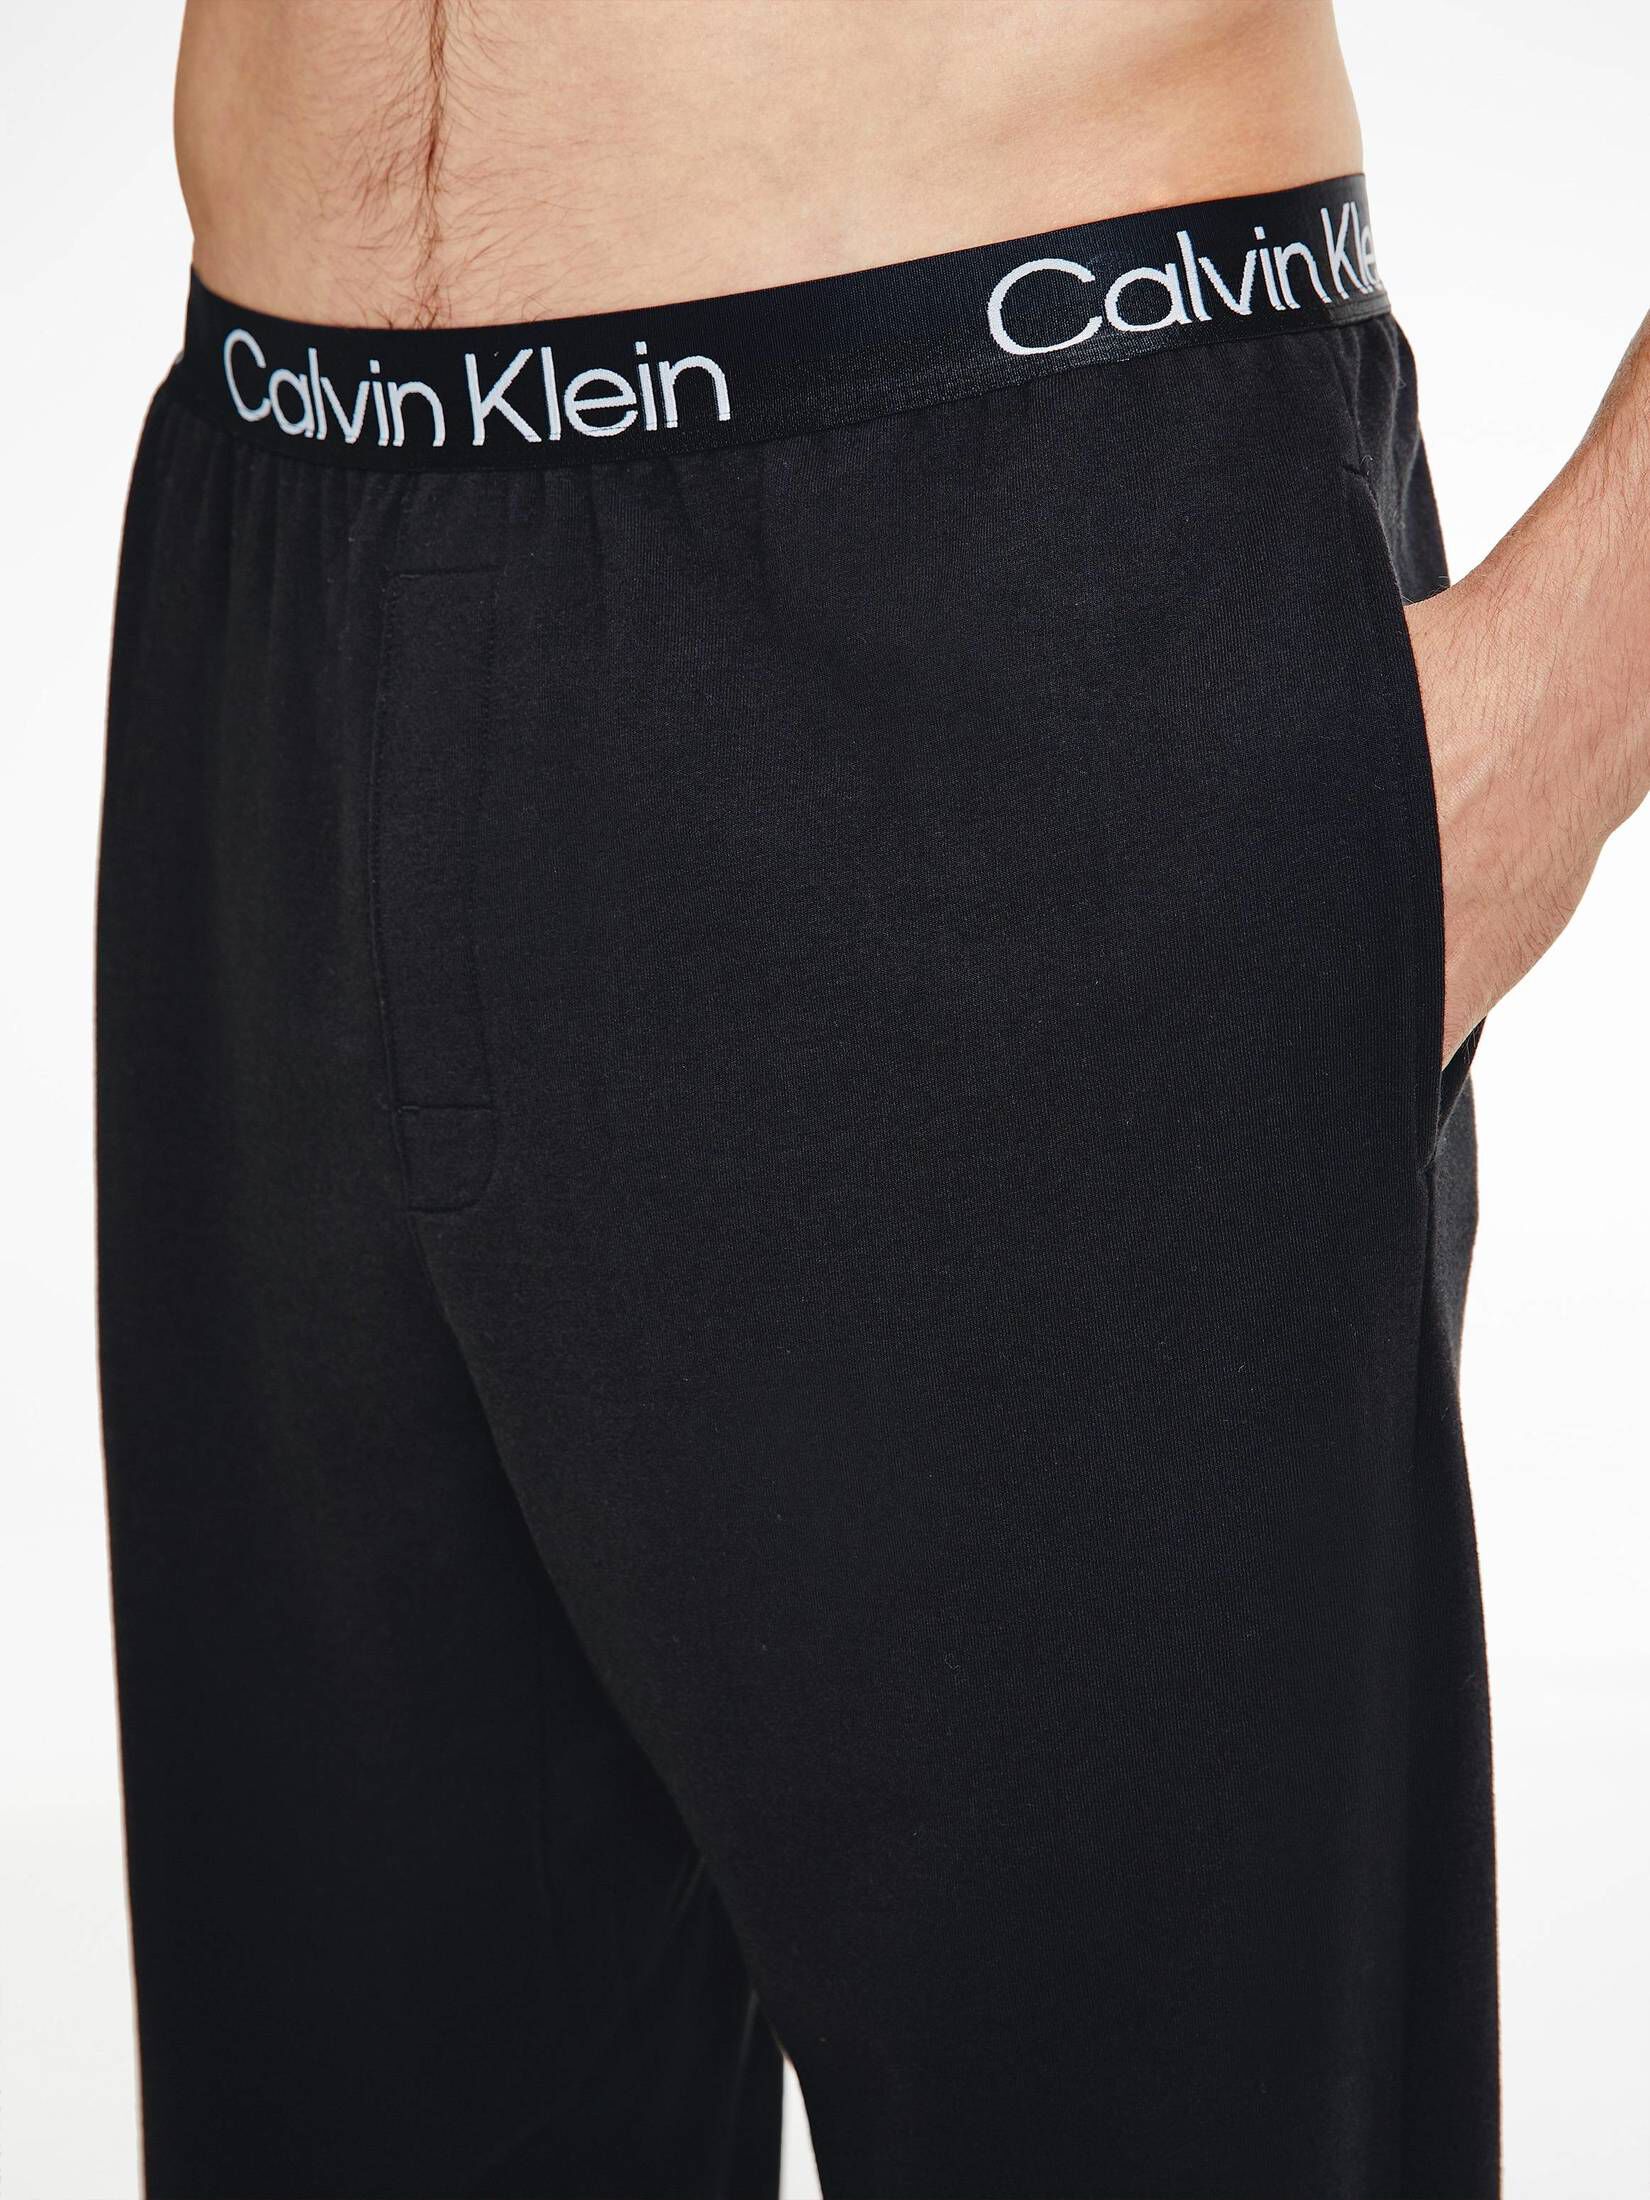 CALVIN KLEIN UNDERWEAR engelhorn Loungewear-Hose | Herren kaufen